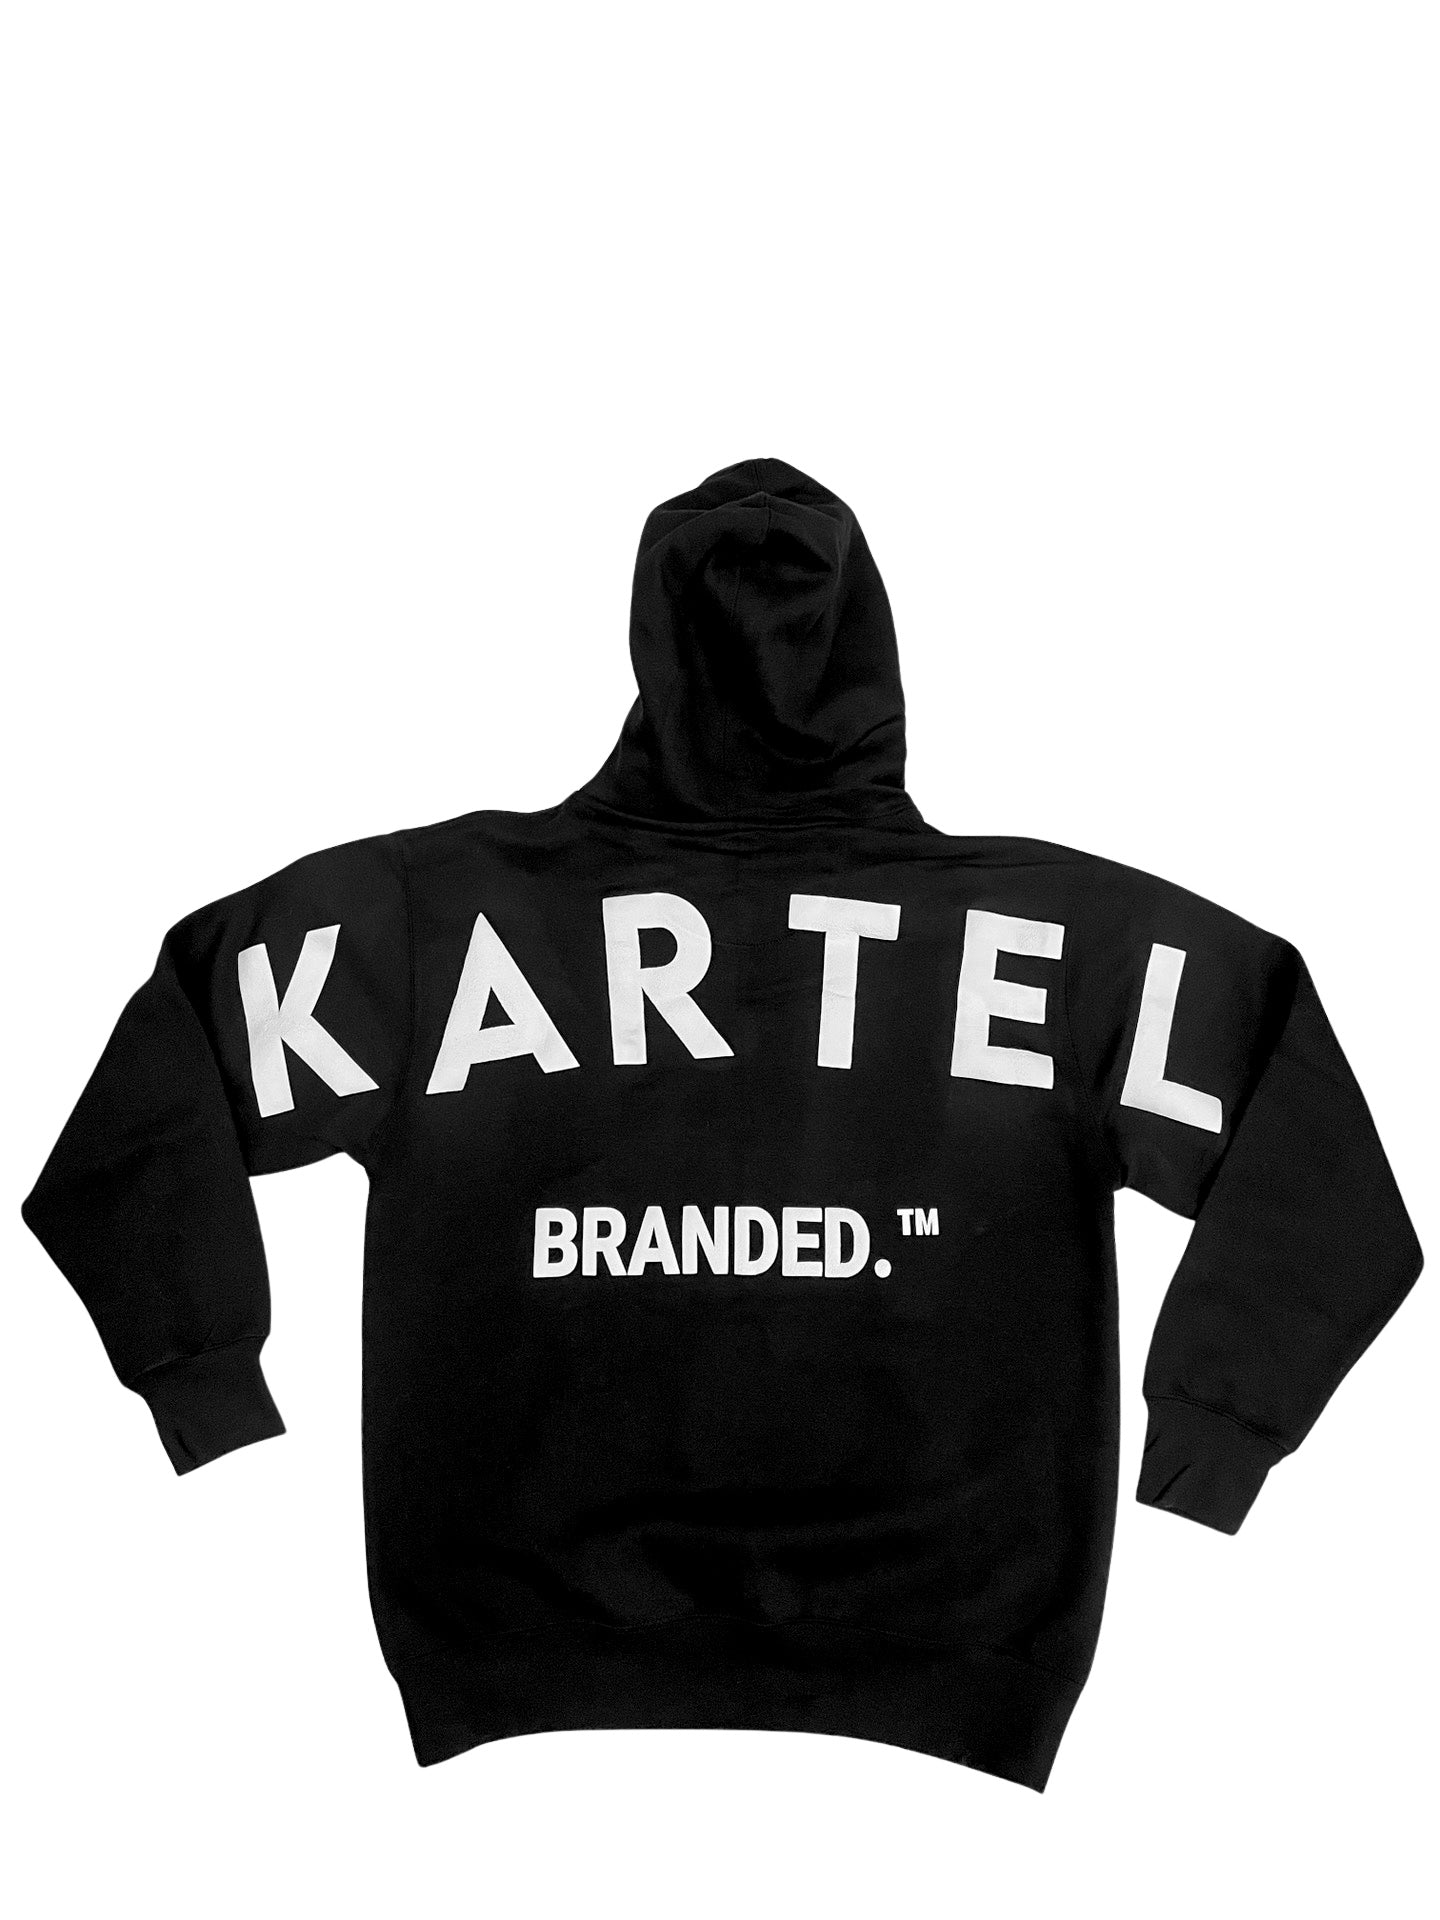 Branded. ™ Set Black